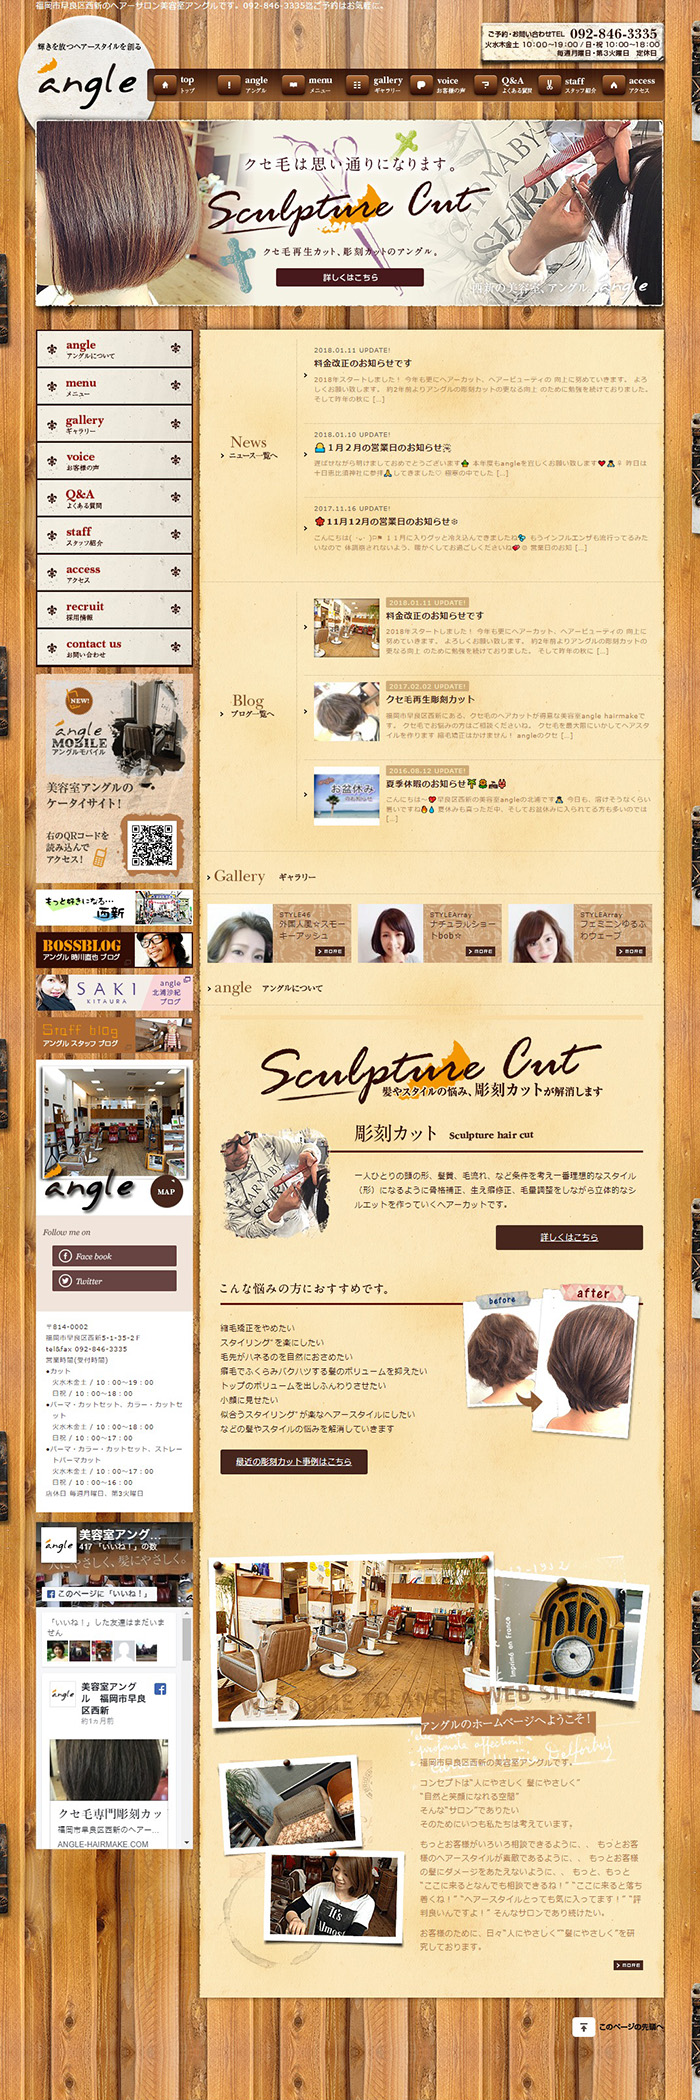 福岡市西新の美容室アングル様ホームページ制作実績 デスクトップイメージ